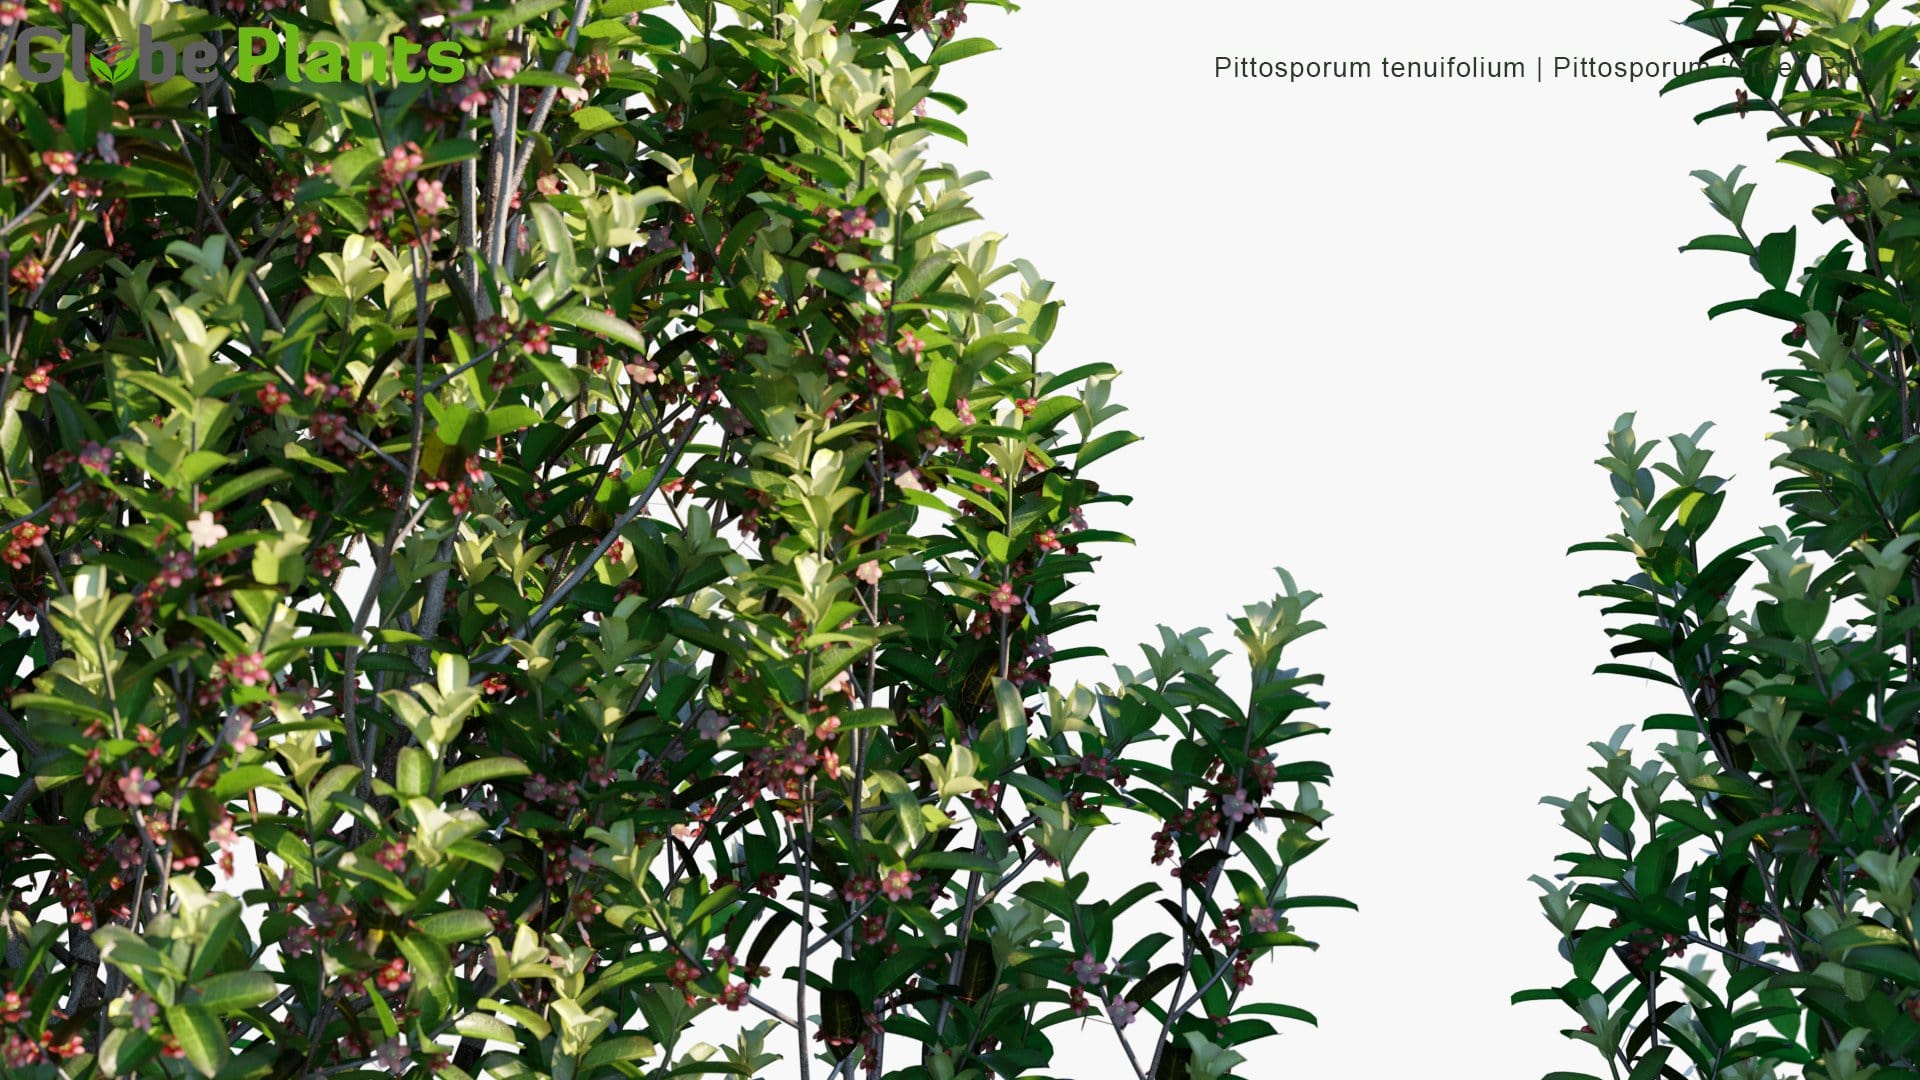 Pittosporum Tenuifolium - Pittosporum 'Green Pillar' (3D Model)